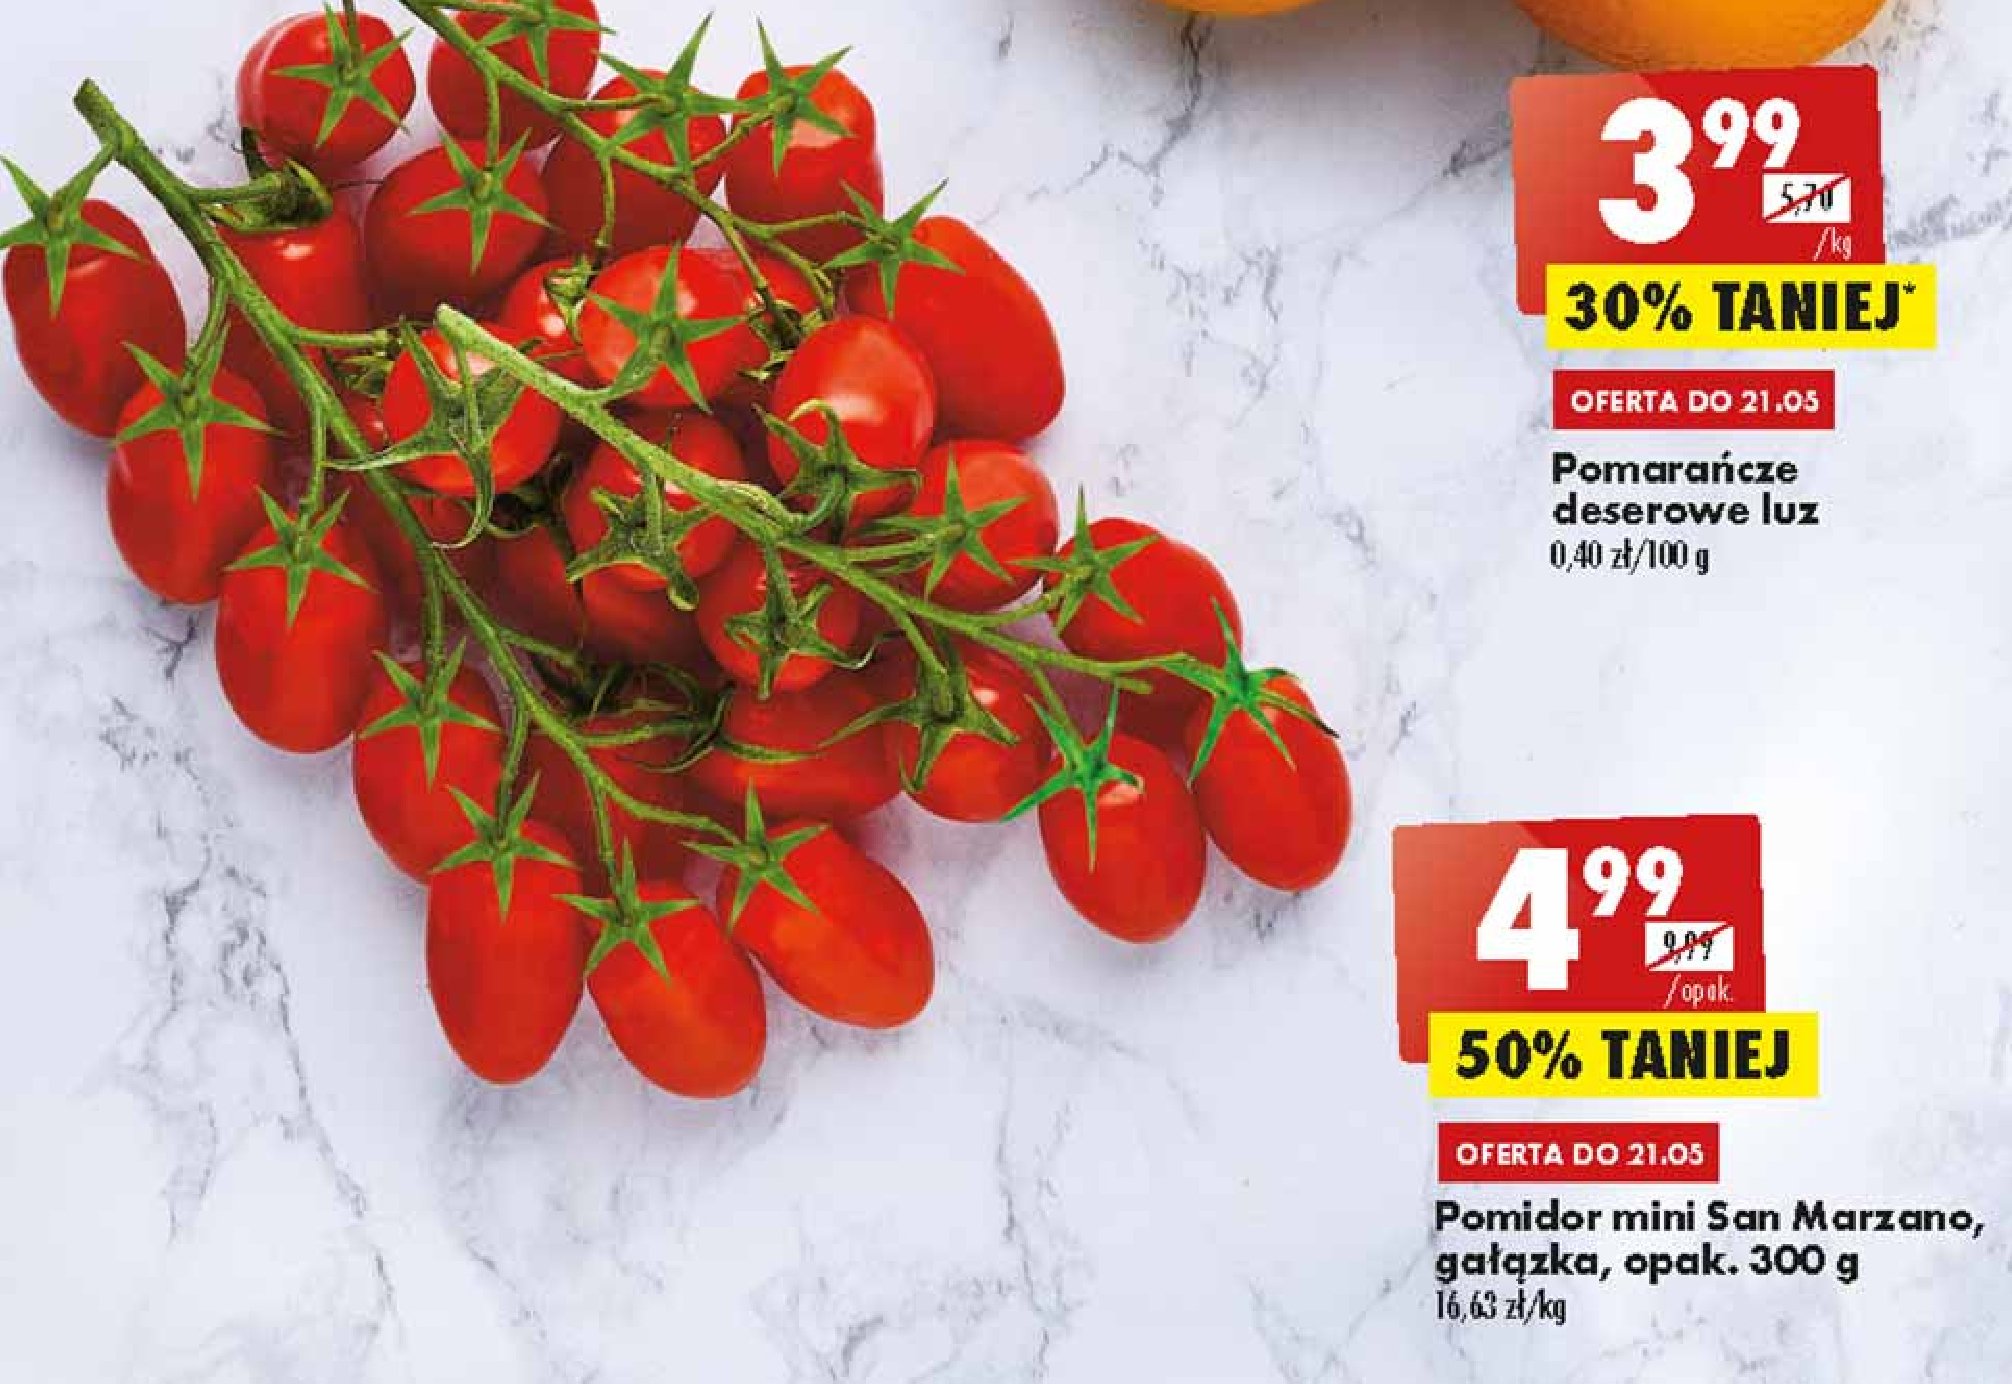 Pomidory mini gałązka san marzano promocje